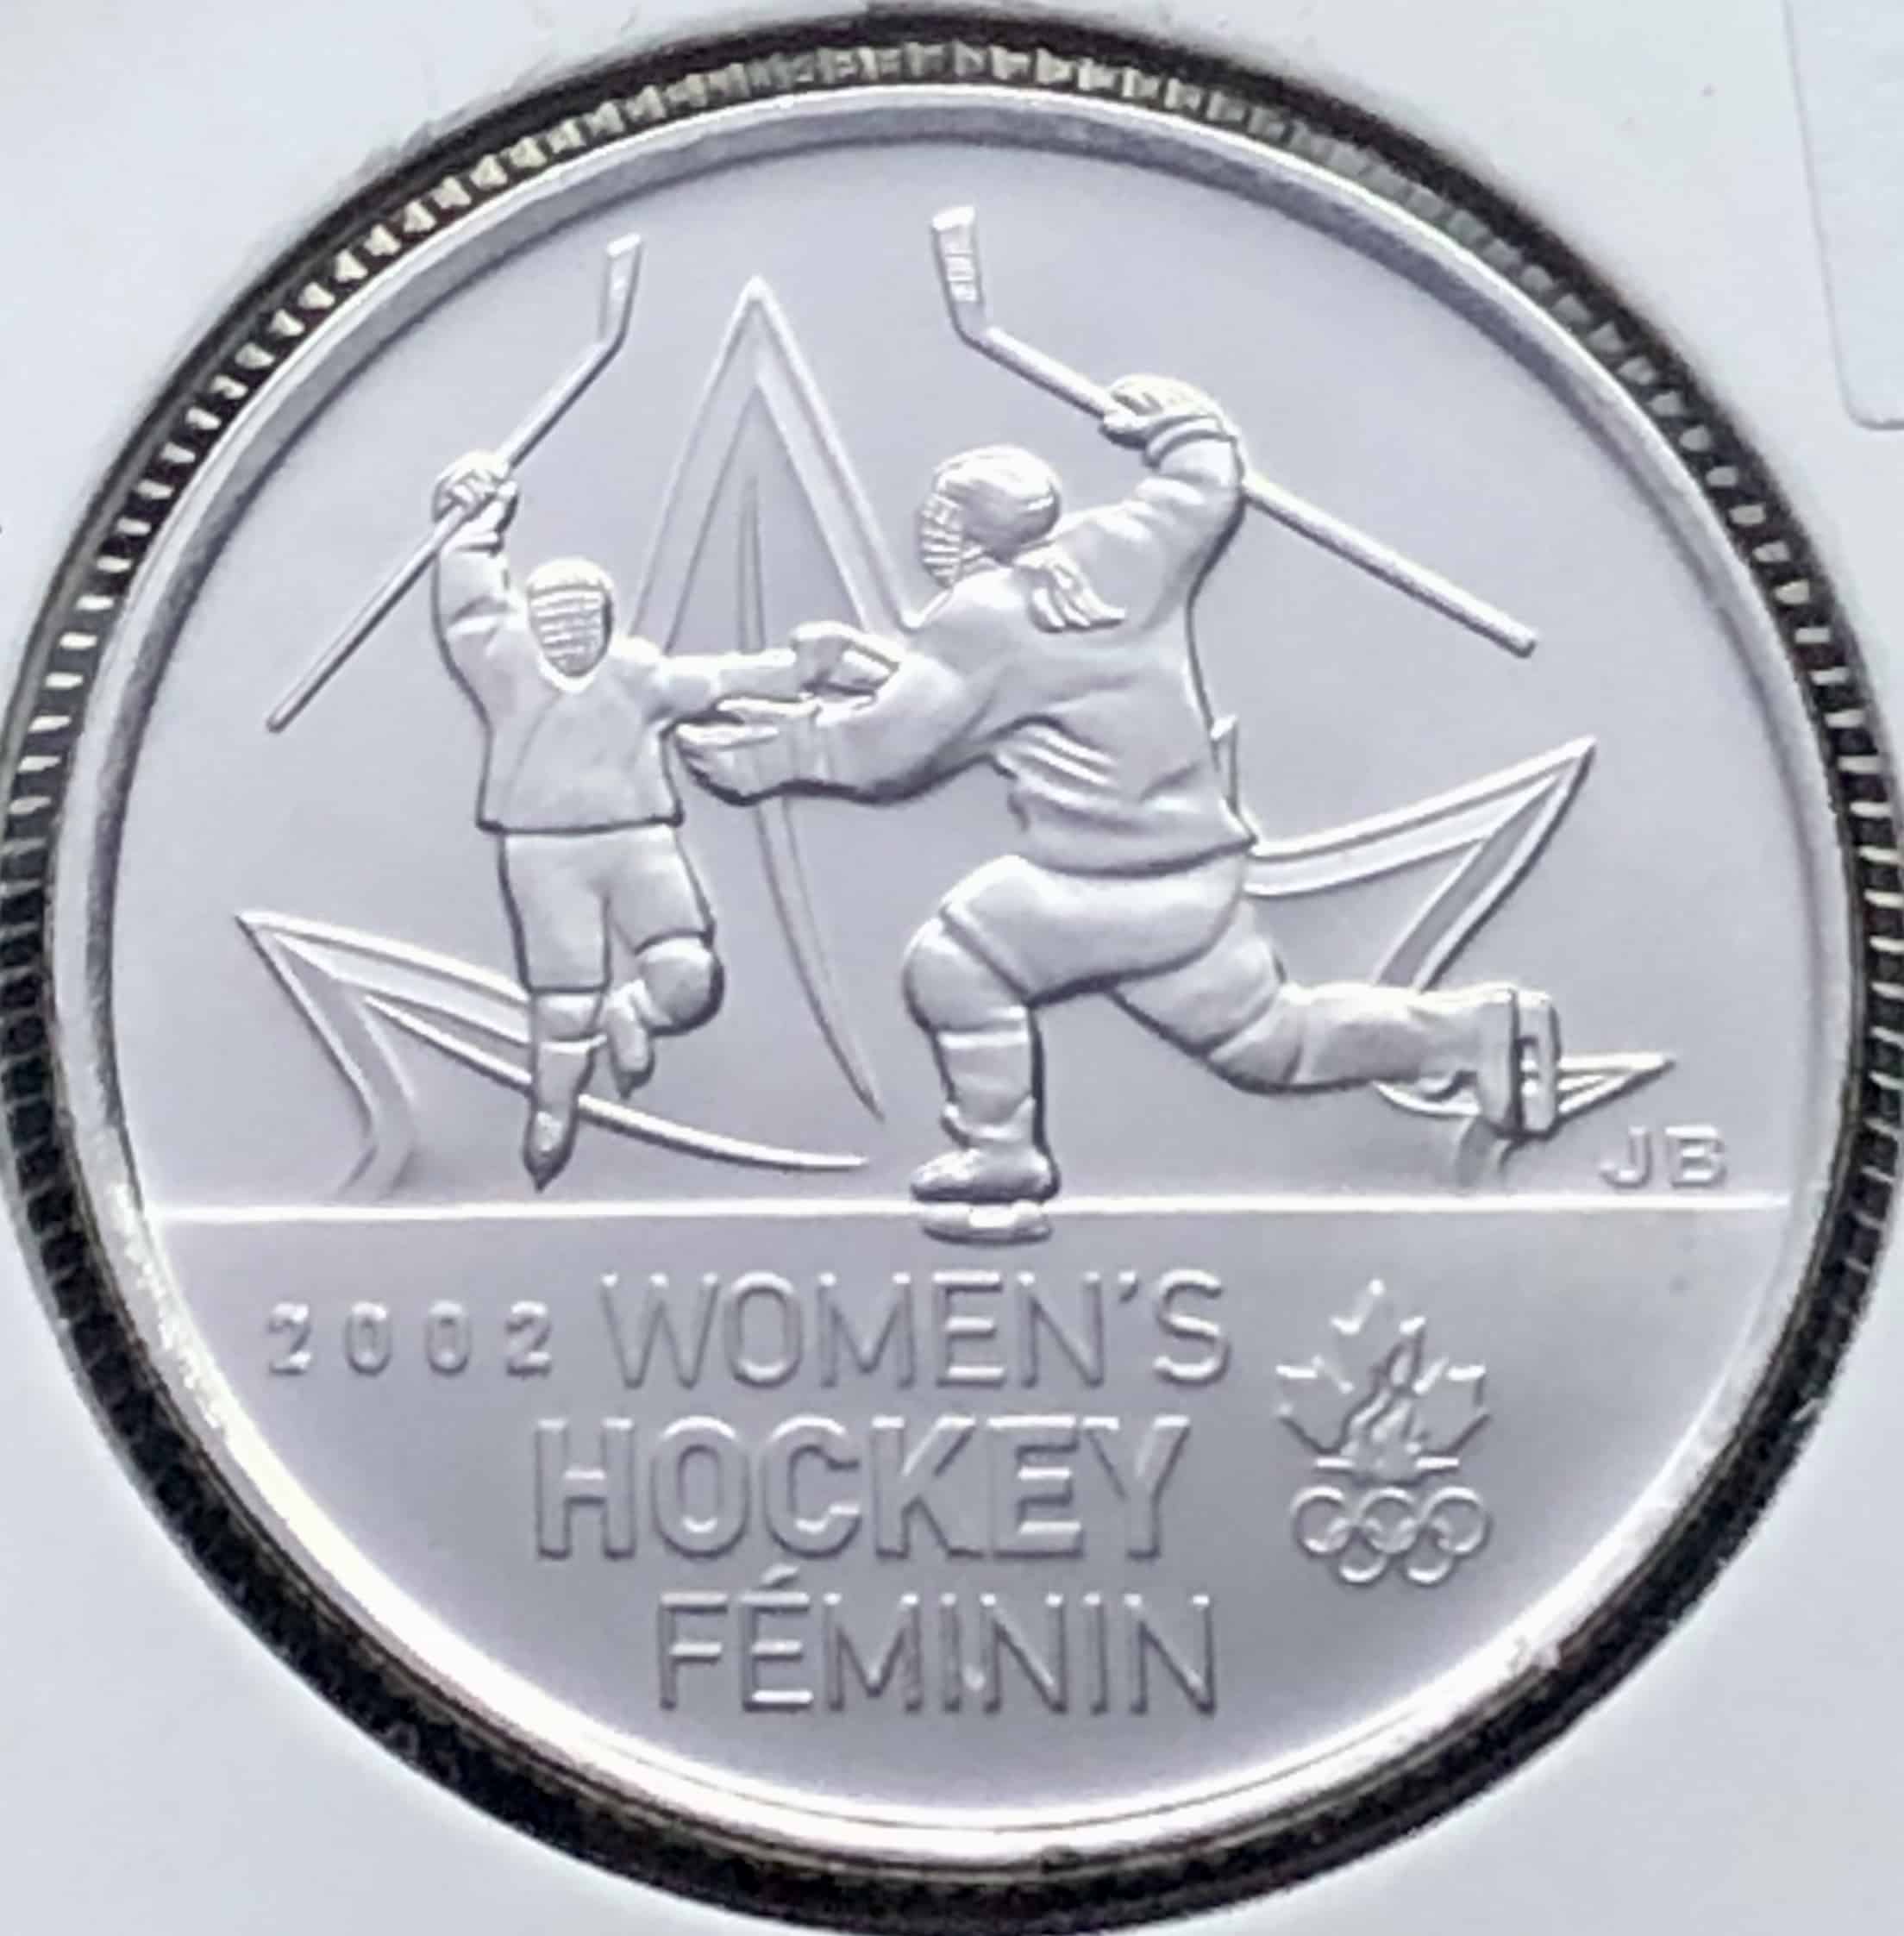 Revers Deux joueuses de hockey levant les bras en signe de victoire sur une feuille d'érable stylisée, le logo du Comité olympique canadien. Écriture : Latin Inscription : 2002 WOMEN'S HOCKEY FÉMININ